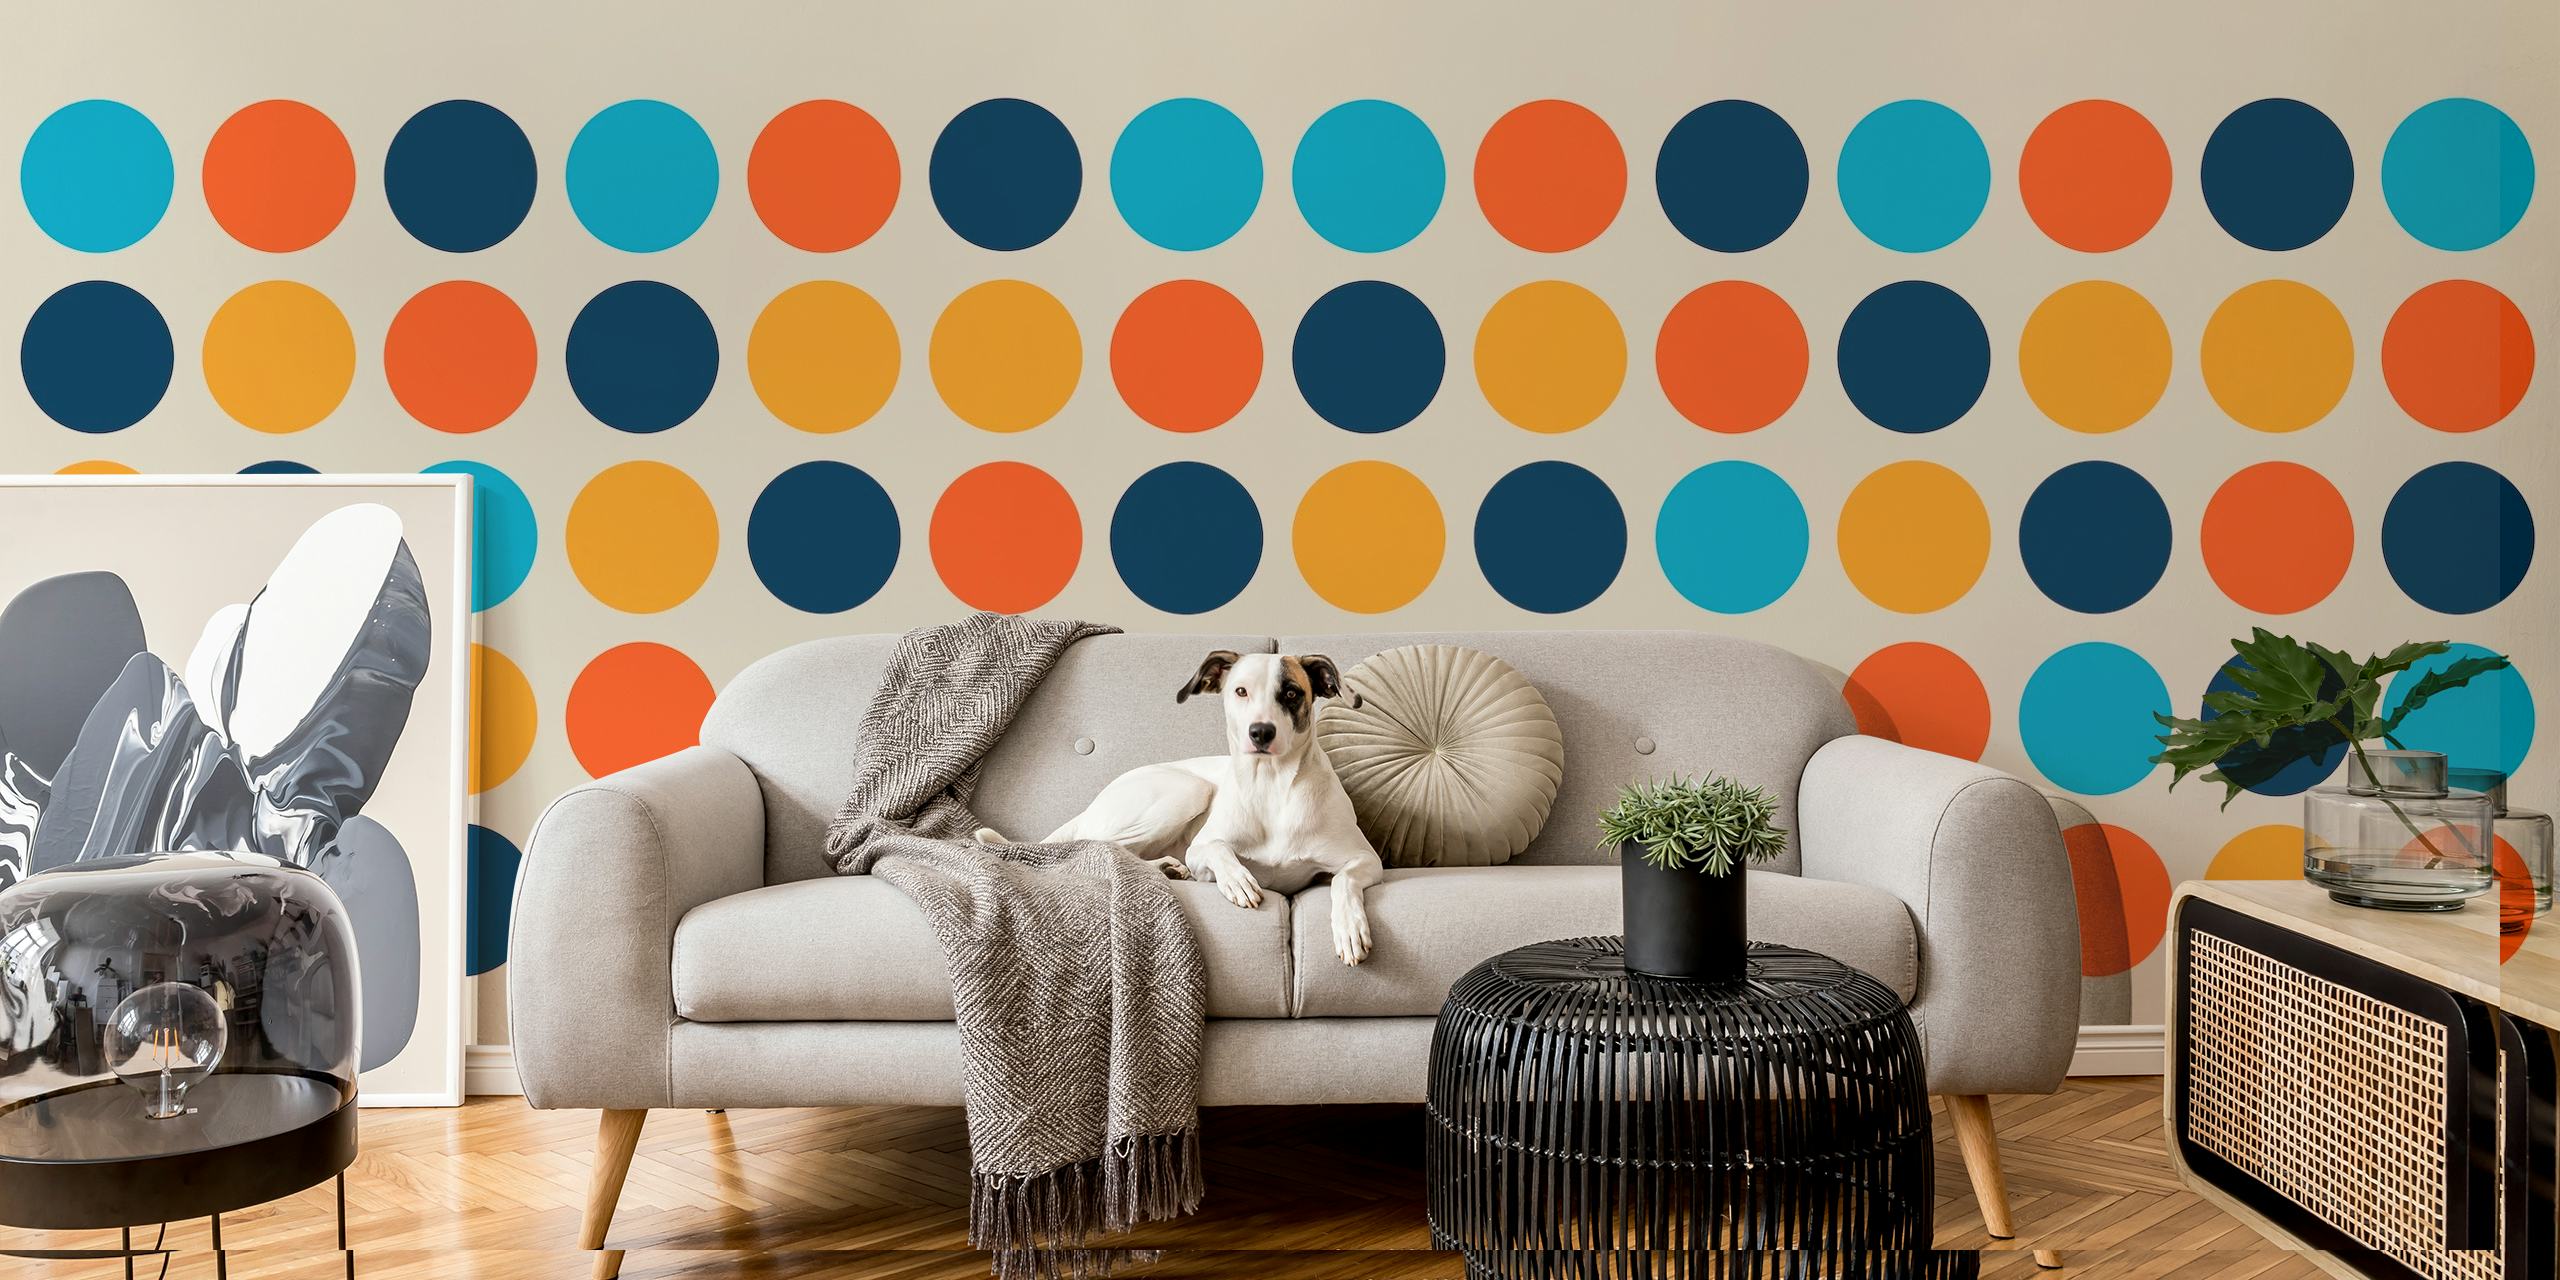 Fotomural vinílico de parede com padrão de círculo geométrico em azul e laranja